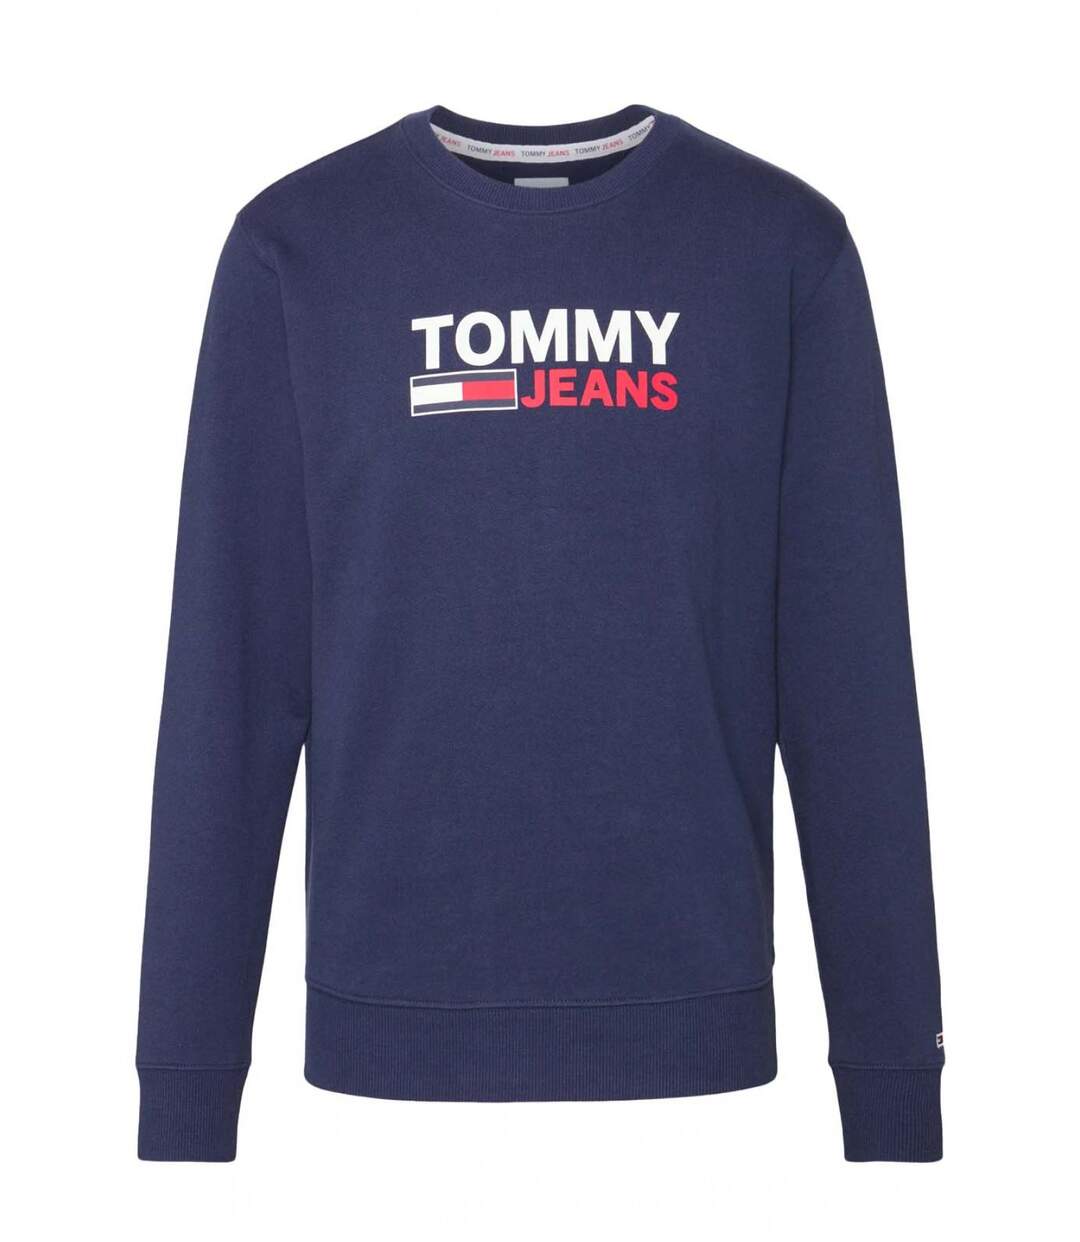 Sweat iconique en coton bio  -  Tommy Jeans - Homme